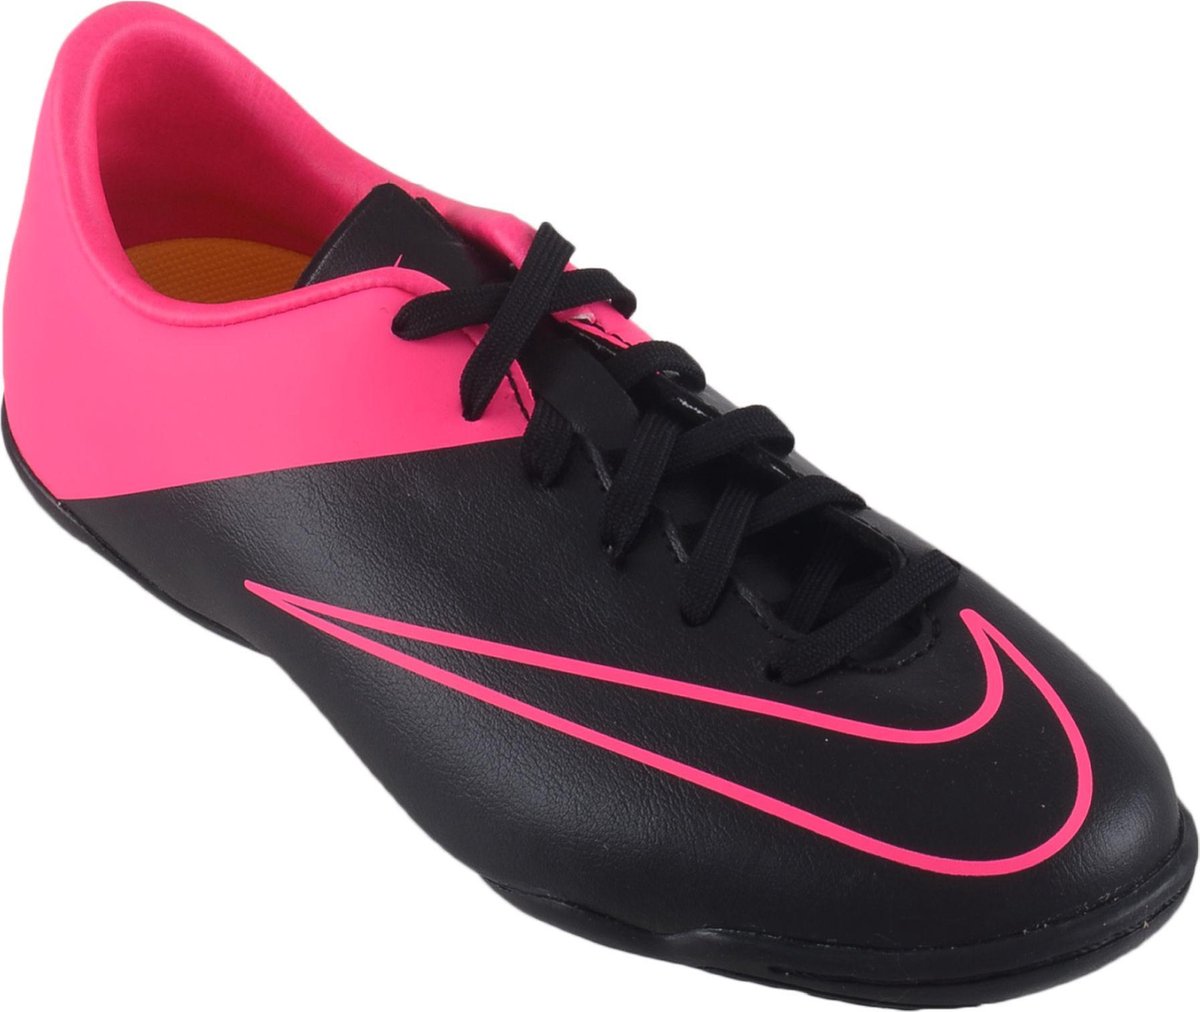 Nike Mercurial Victory V IC - Voetbalschoenen - Unisex - Maat 31 - zwart/roze  | bol.com